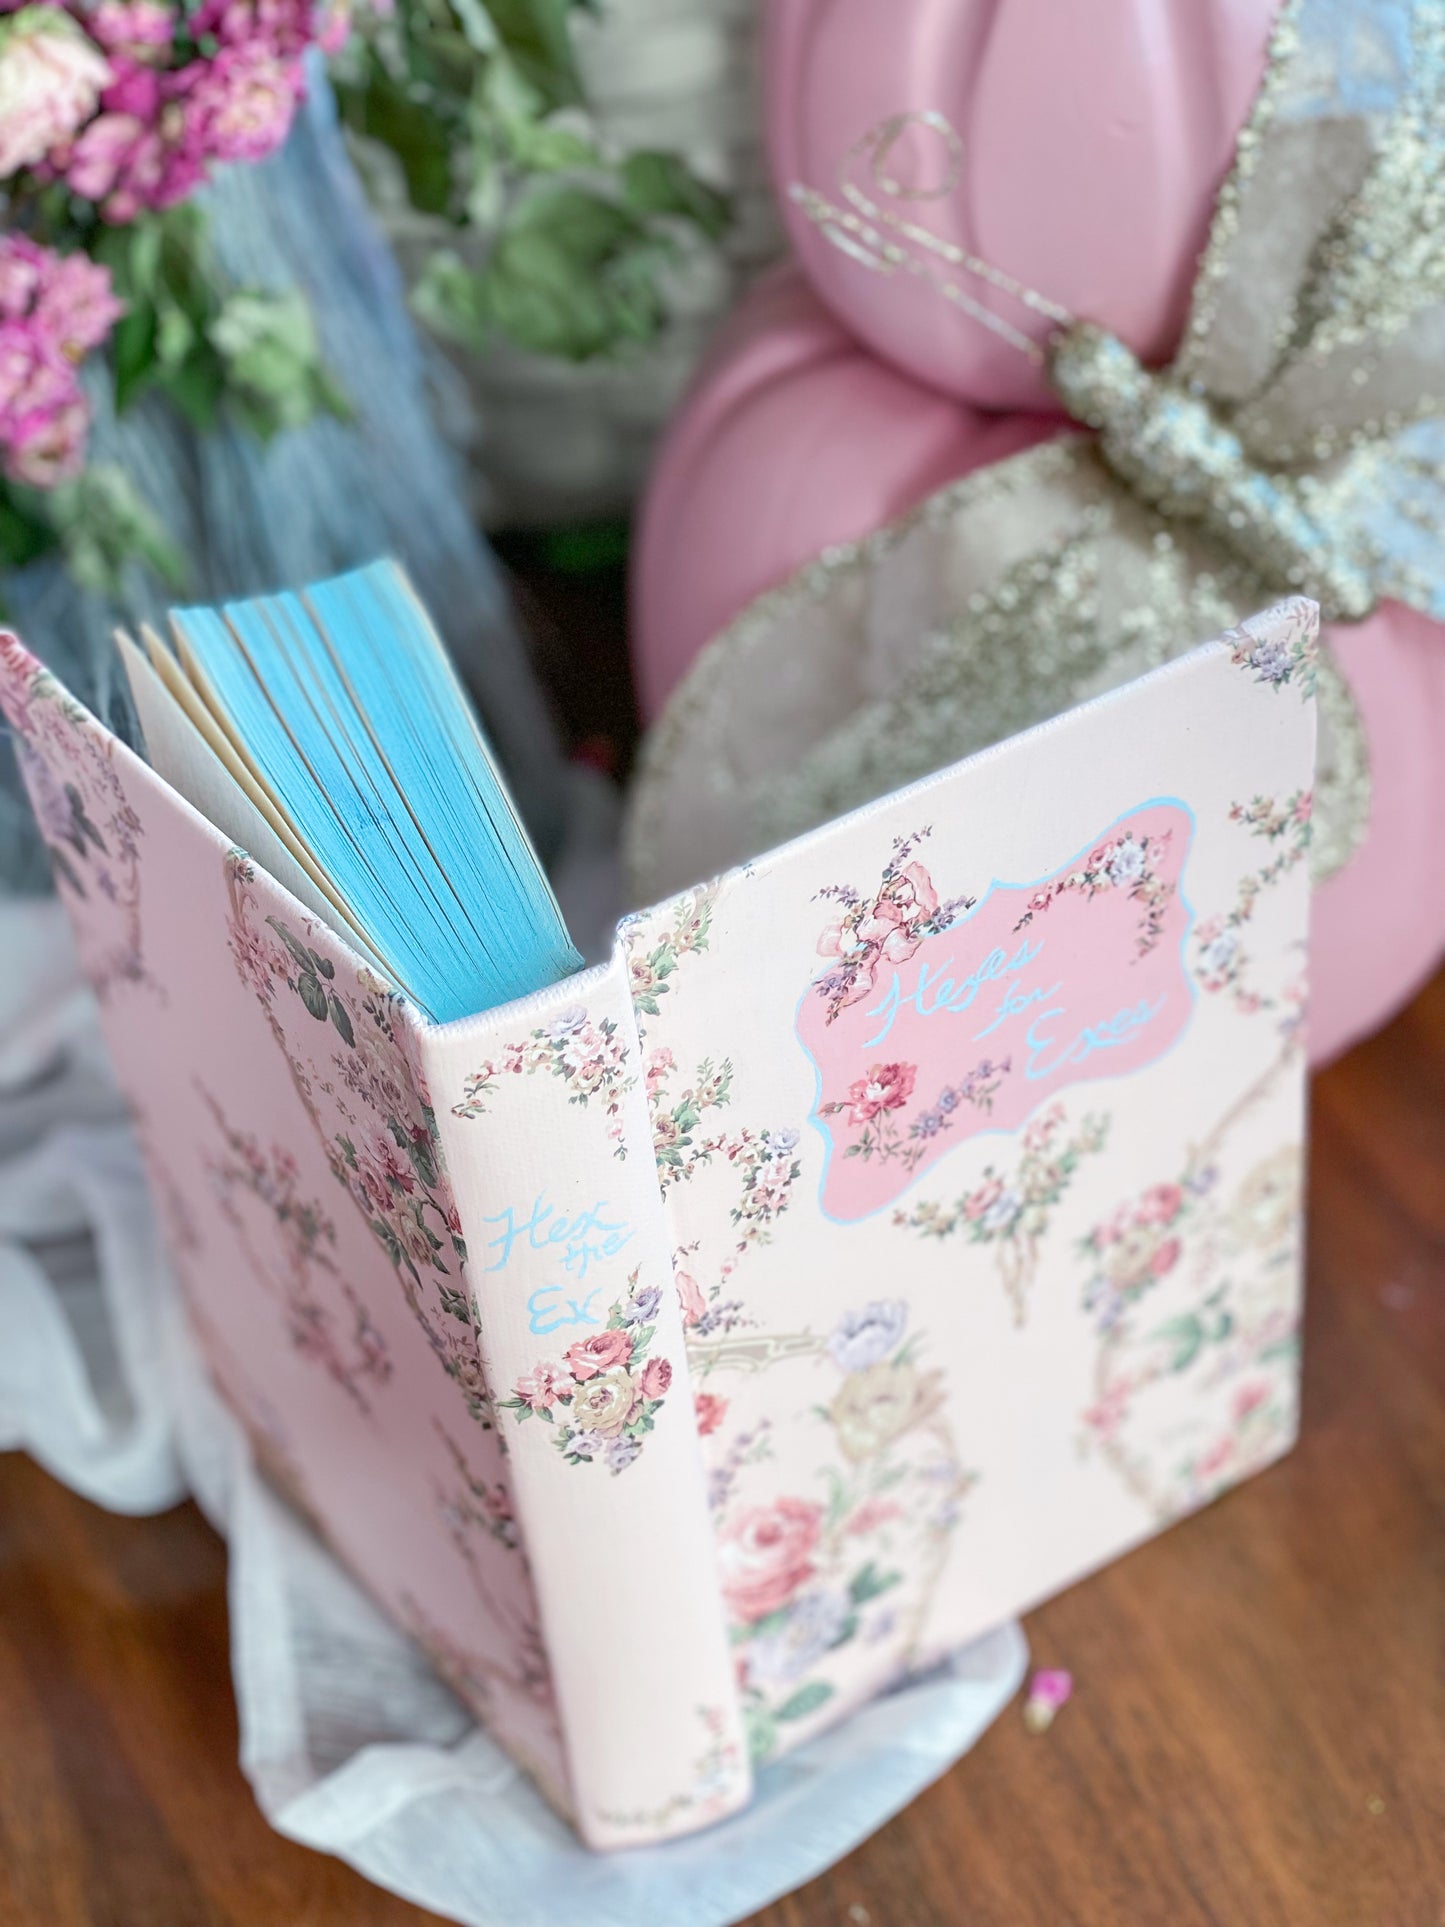 Libro floral reciclado pintado a mano en rosa y azul - Hexes For Exes